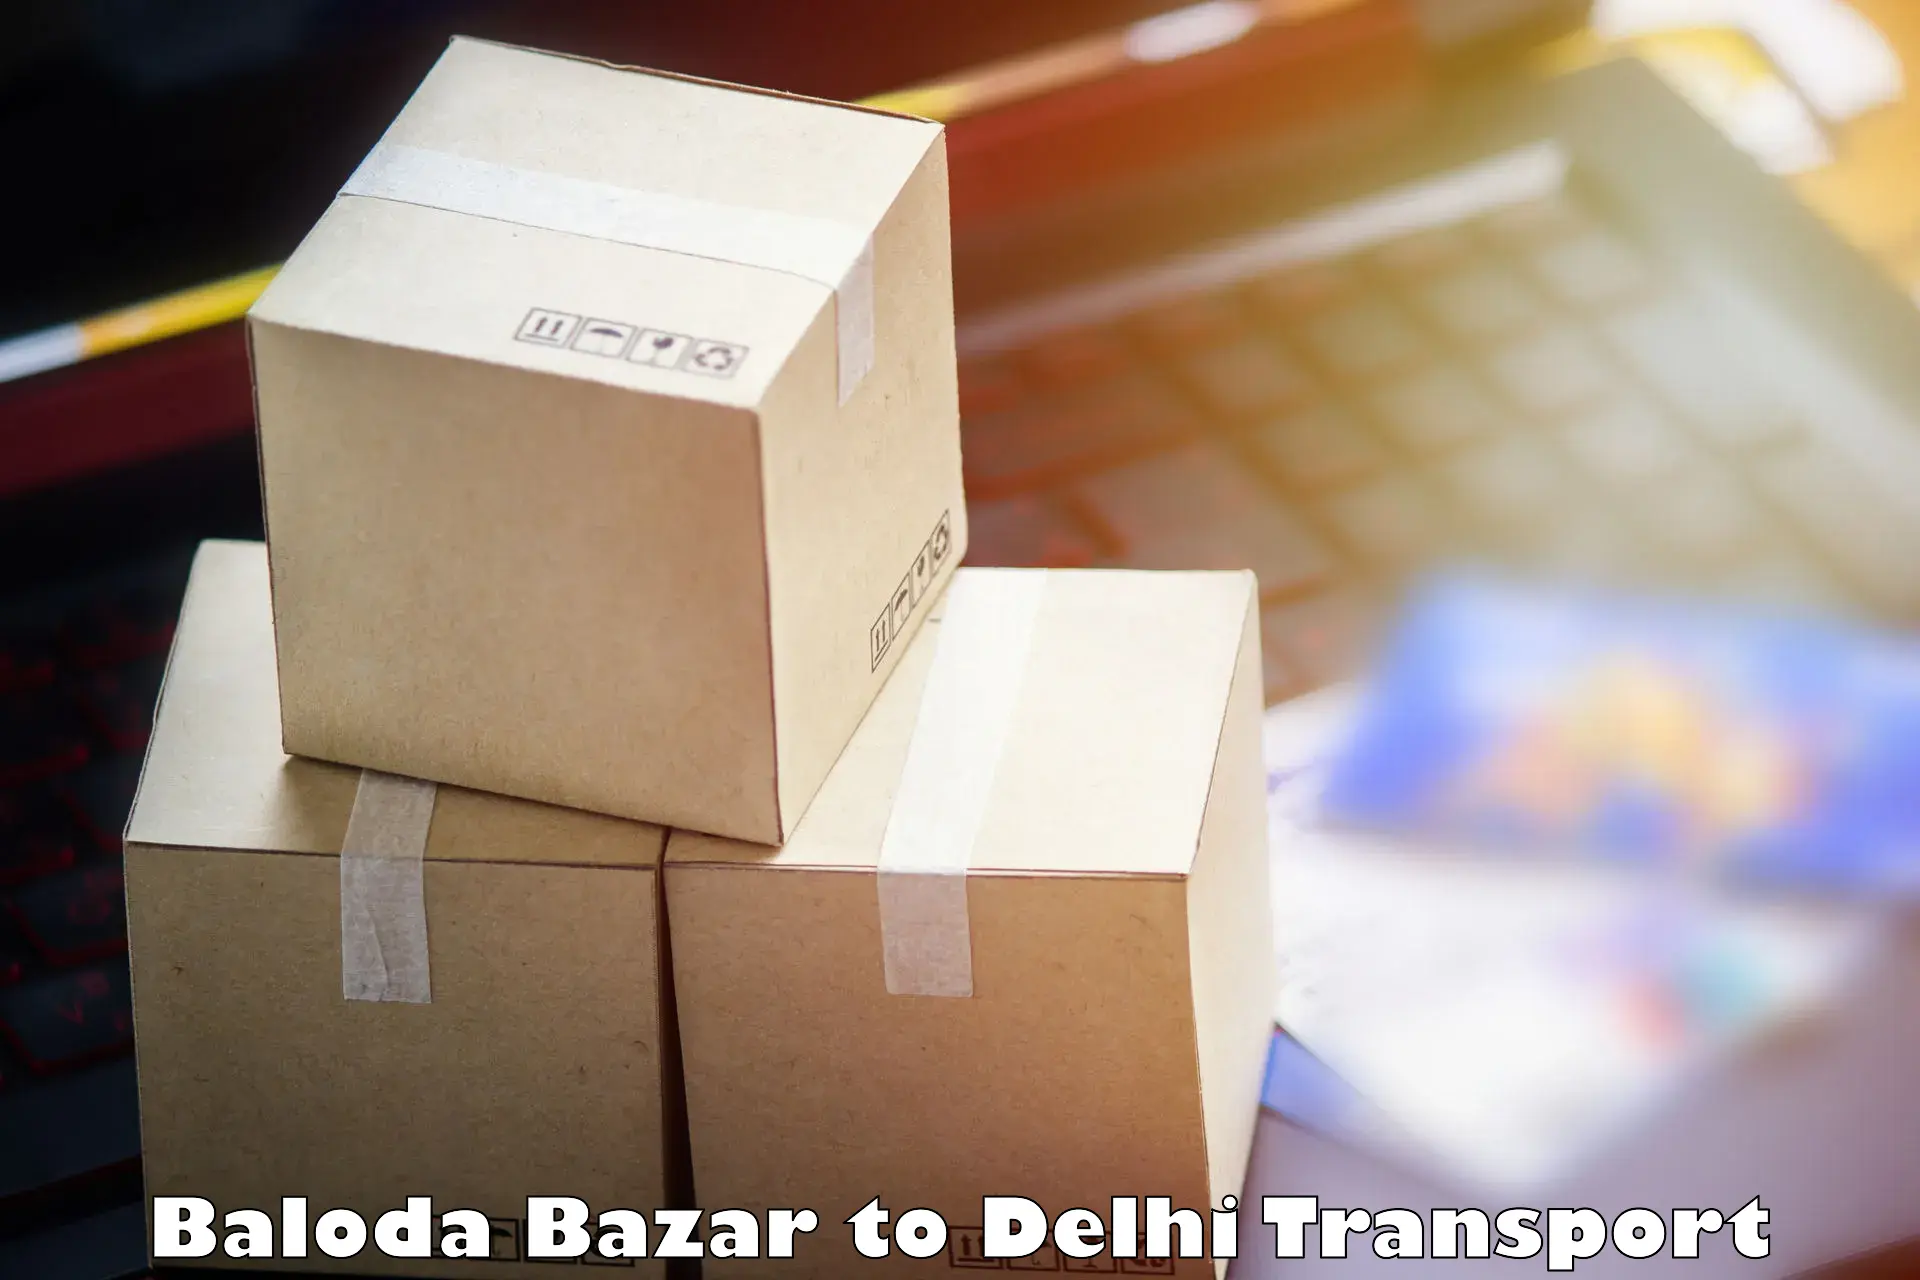 Air cargo transport services Baloda Bazar to NCR